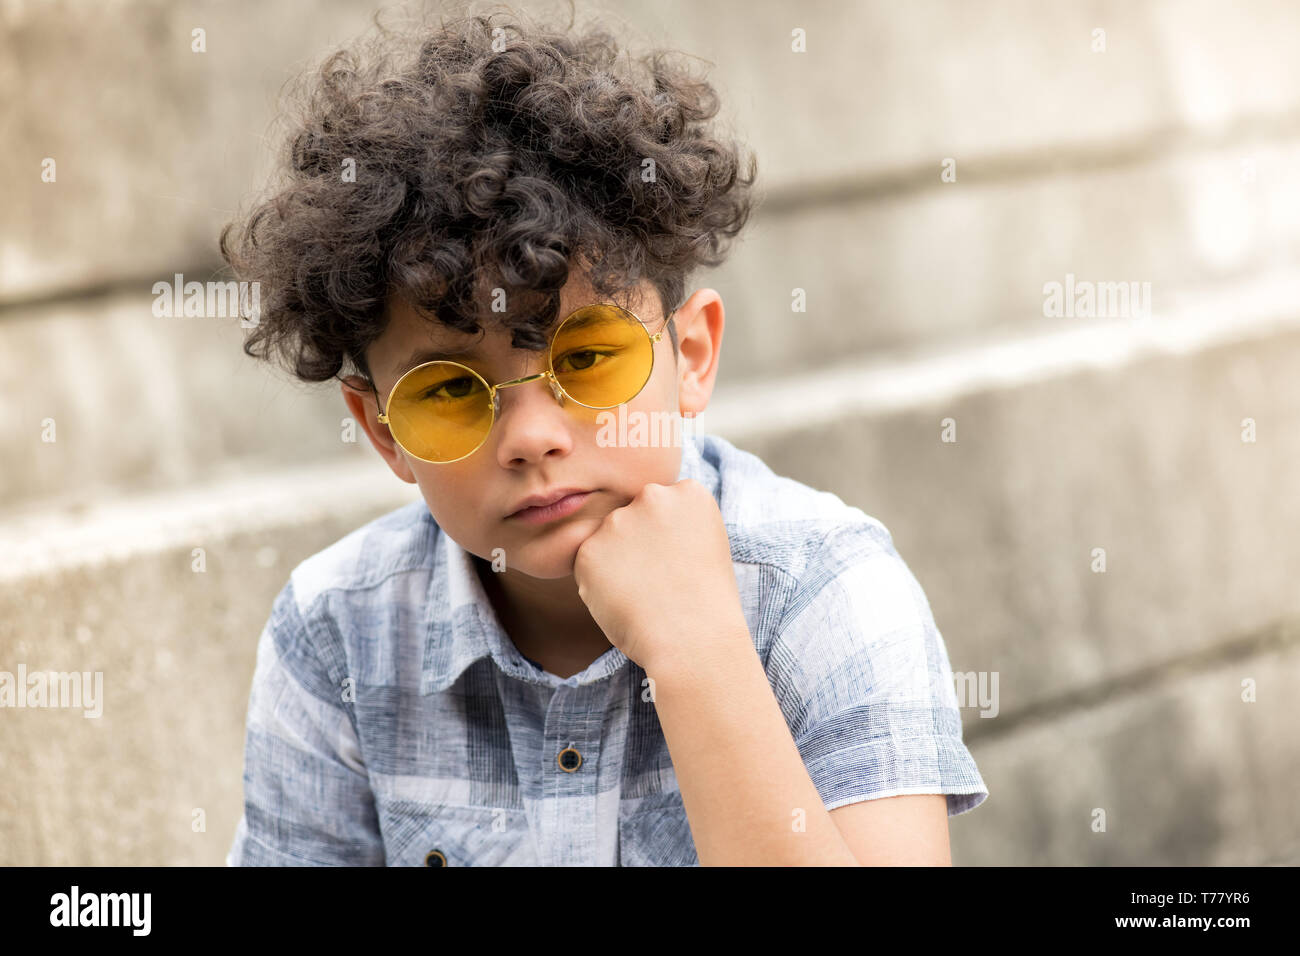 Ernsthafte junge mit Zerzaustem lockiges Haar sitzt auf einem Schritt im Freien in trendigen runde gelbe Sonnenbrille mit Kinn auf der Hand in die Kamera starrt Stockfoto